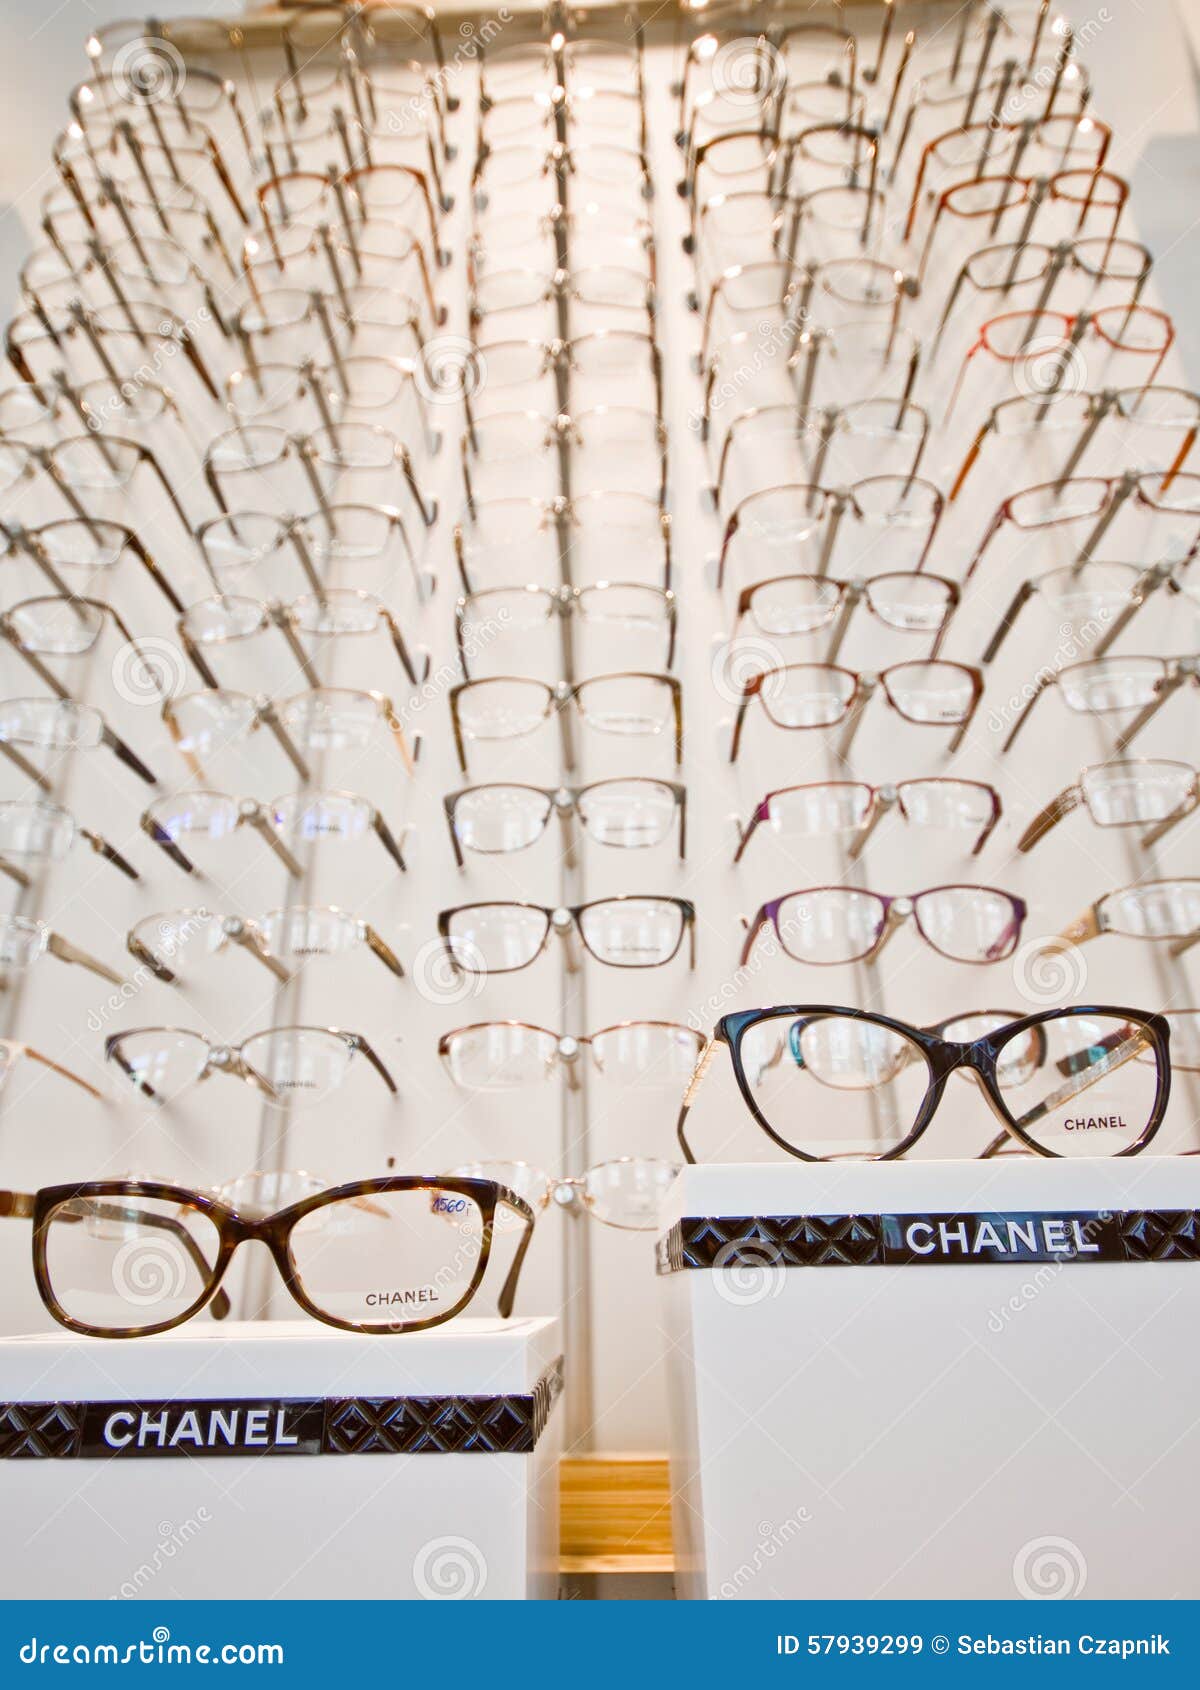 Chanel Womens Eyewear